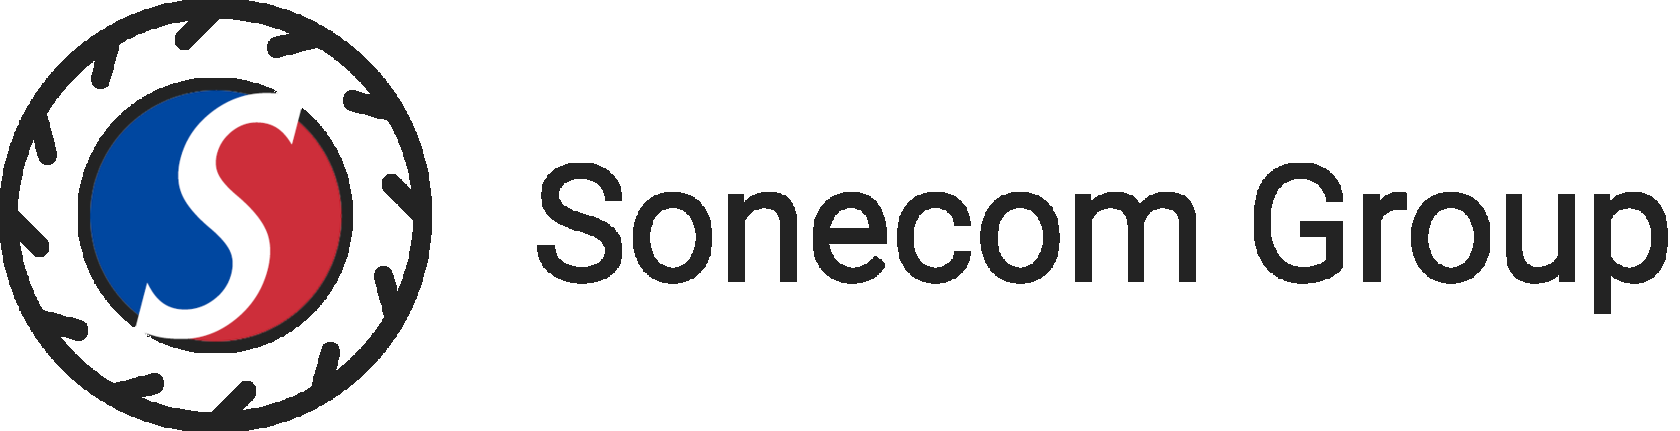 Sonecom group